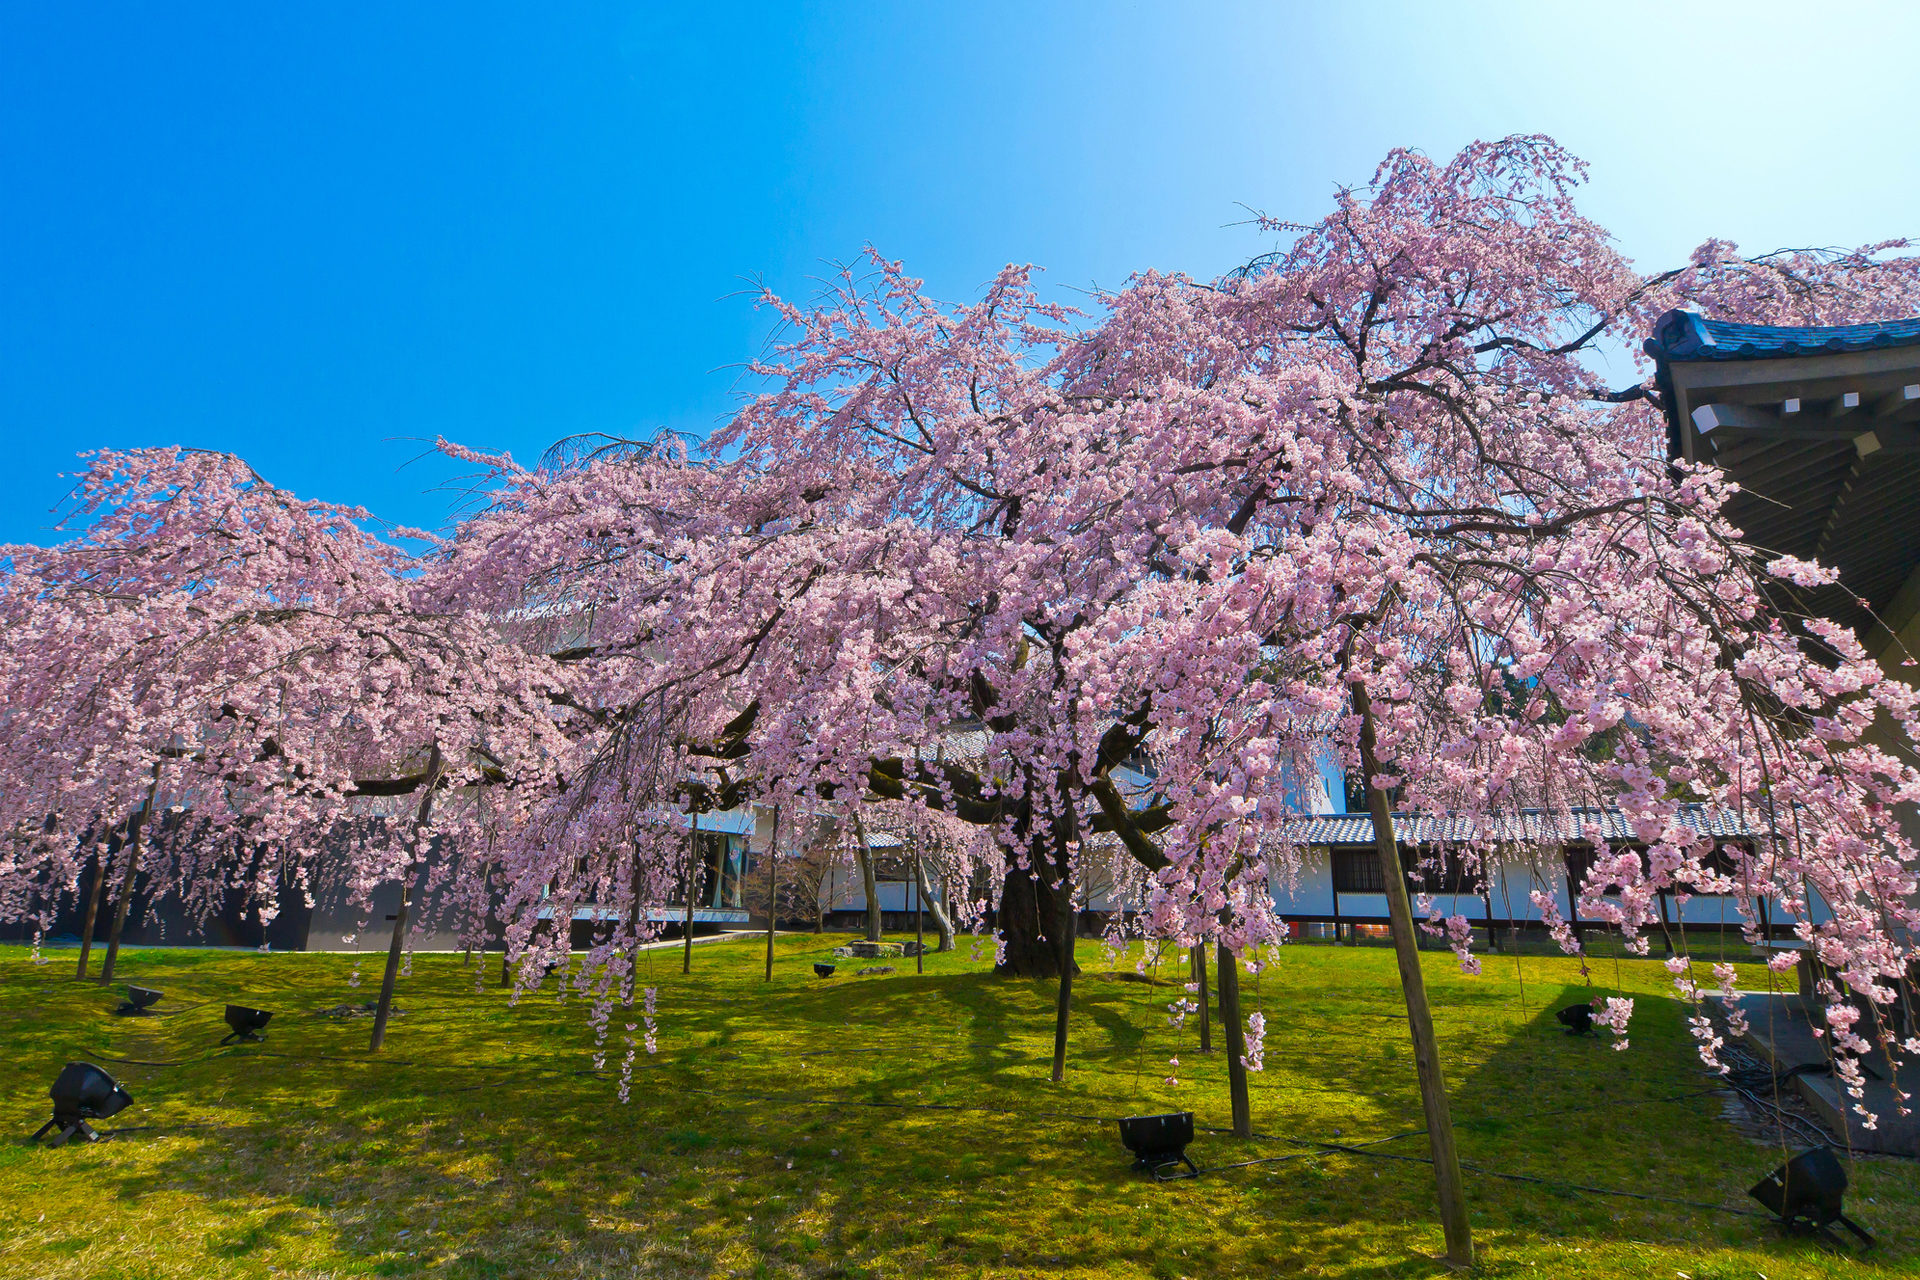 年 1番綺麗な京都の桜のスポットは Caedekyoto カエデ京都 紅葉と伝統美を引き継ぐバッグ